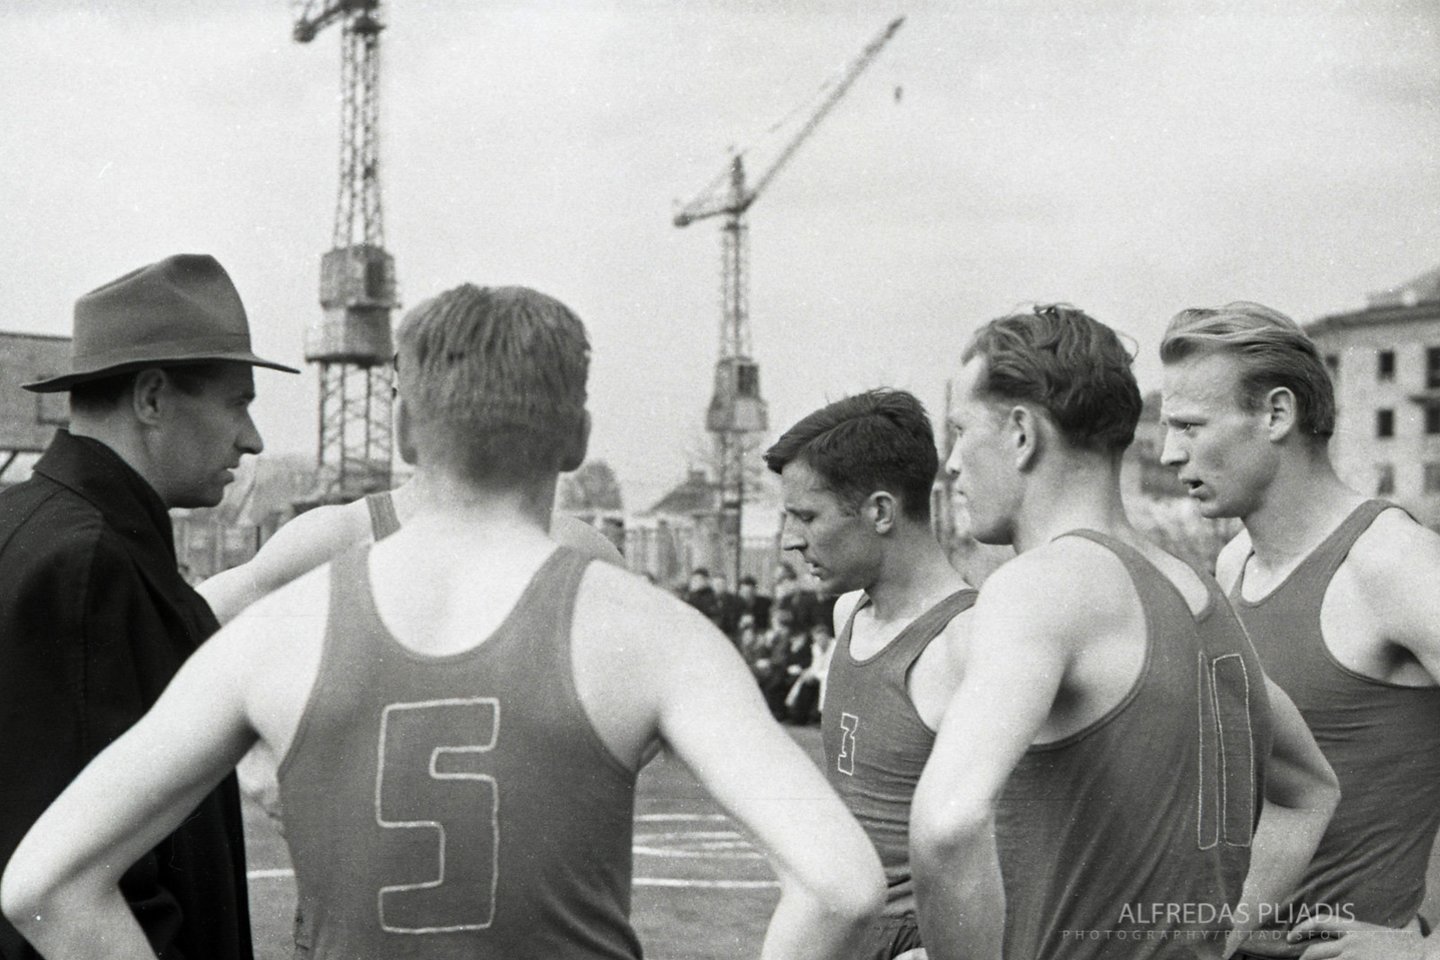  Krepšinio varžybos (1960 m.)<br> A.Pliadžio nuotr.